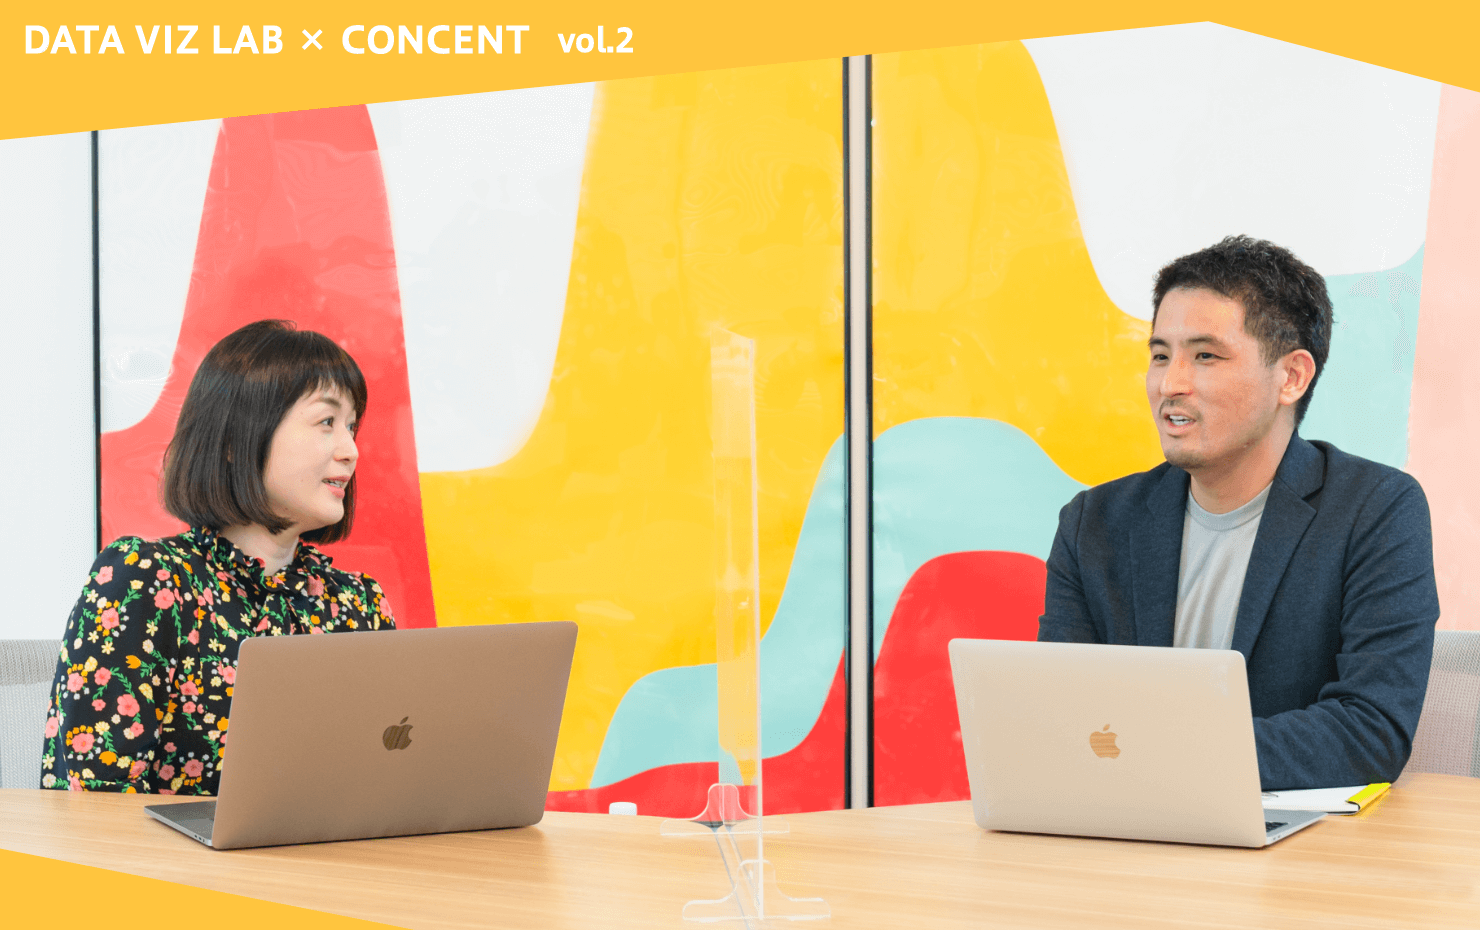 データビズラボのオフィス内、永田氏と大崎が並んで座っている。画像にかかるテキストには、DATA VIZ LAB×CONCENT vol.2とある。